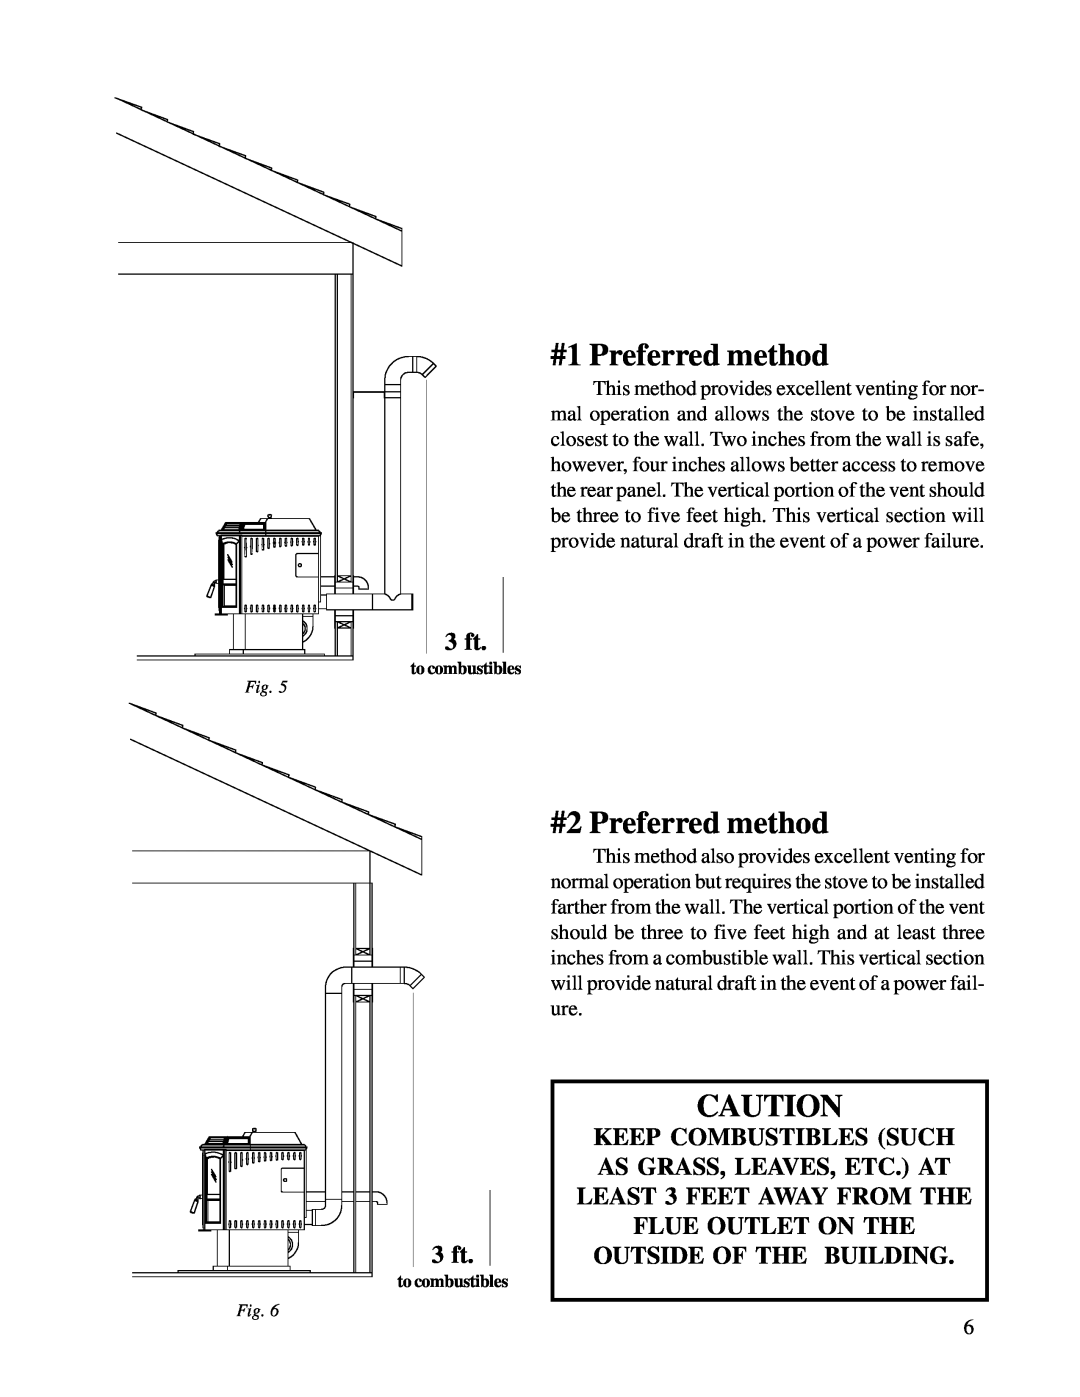 Harman Stove Company R6 owner manual #1 Preferred method, #2 Preferred method, 3 ft 